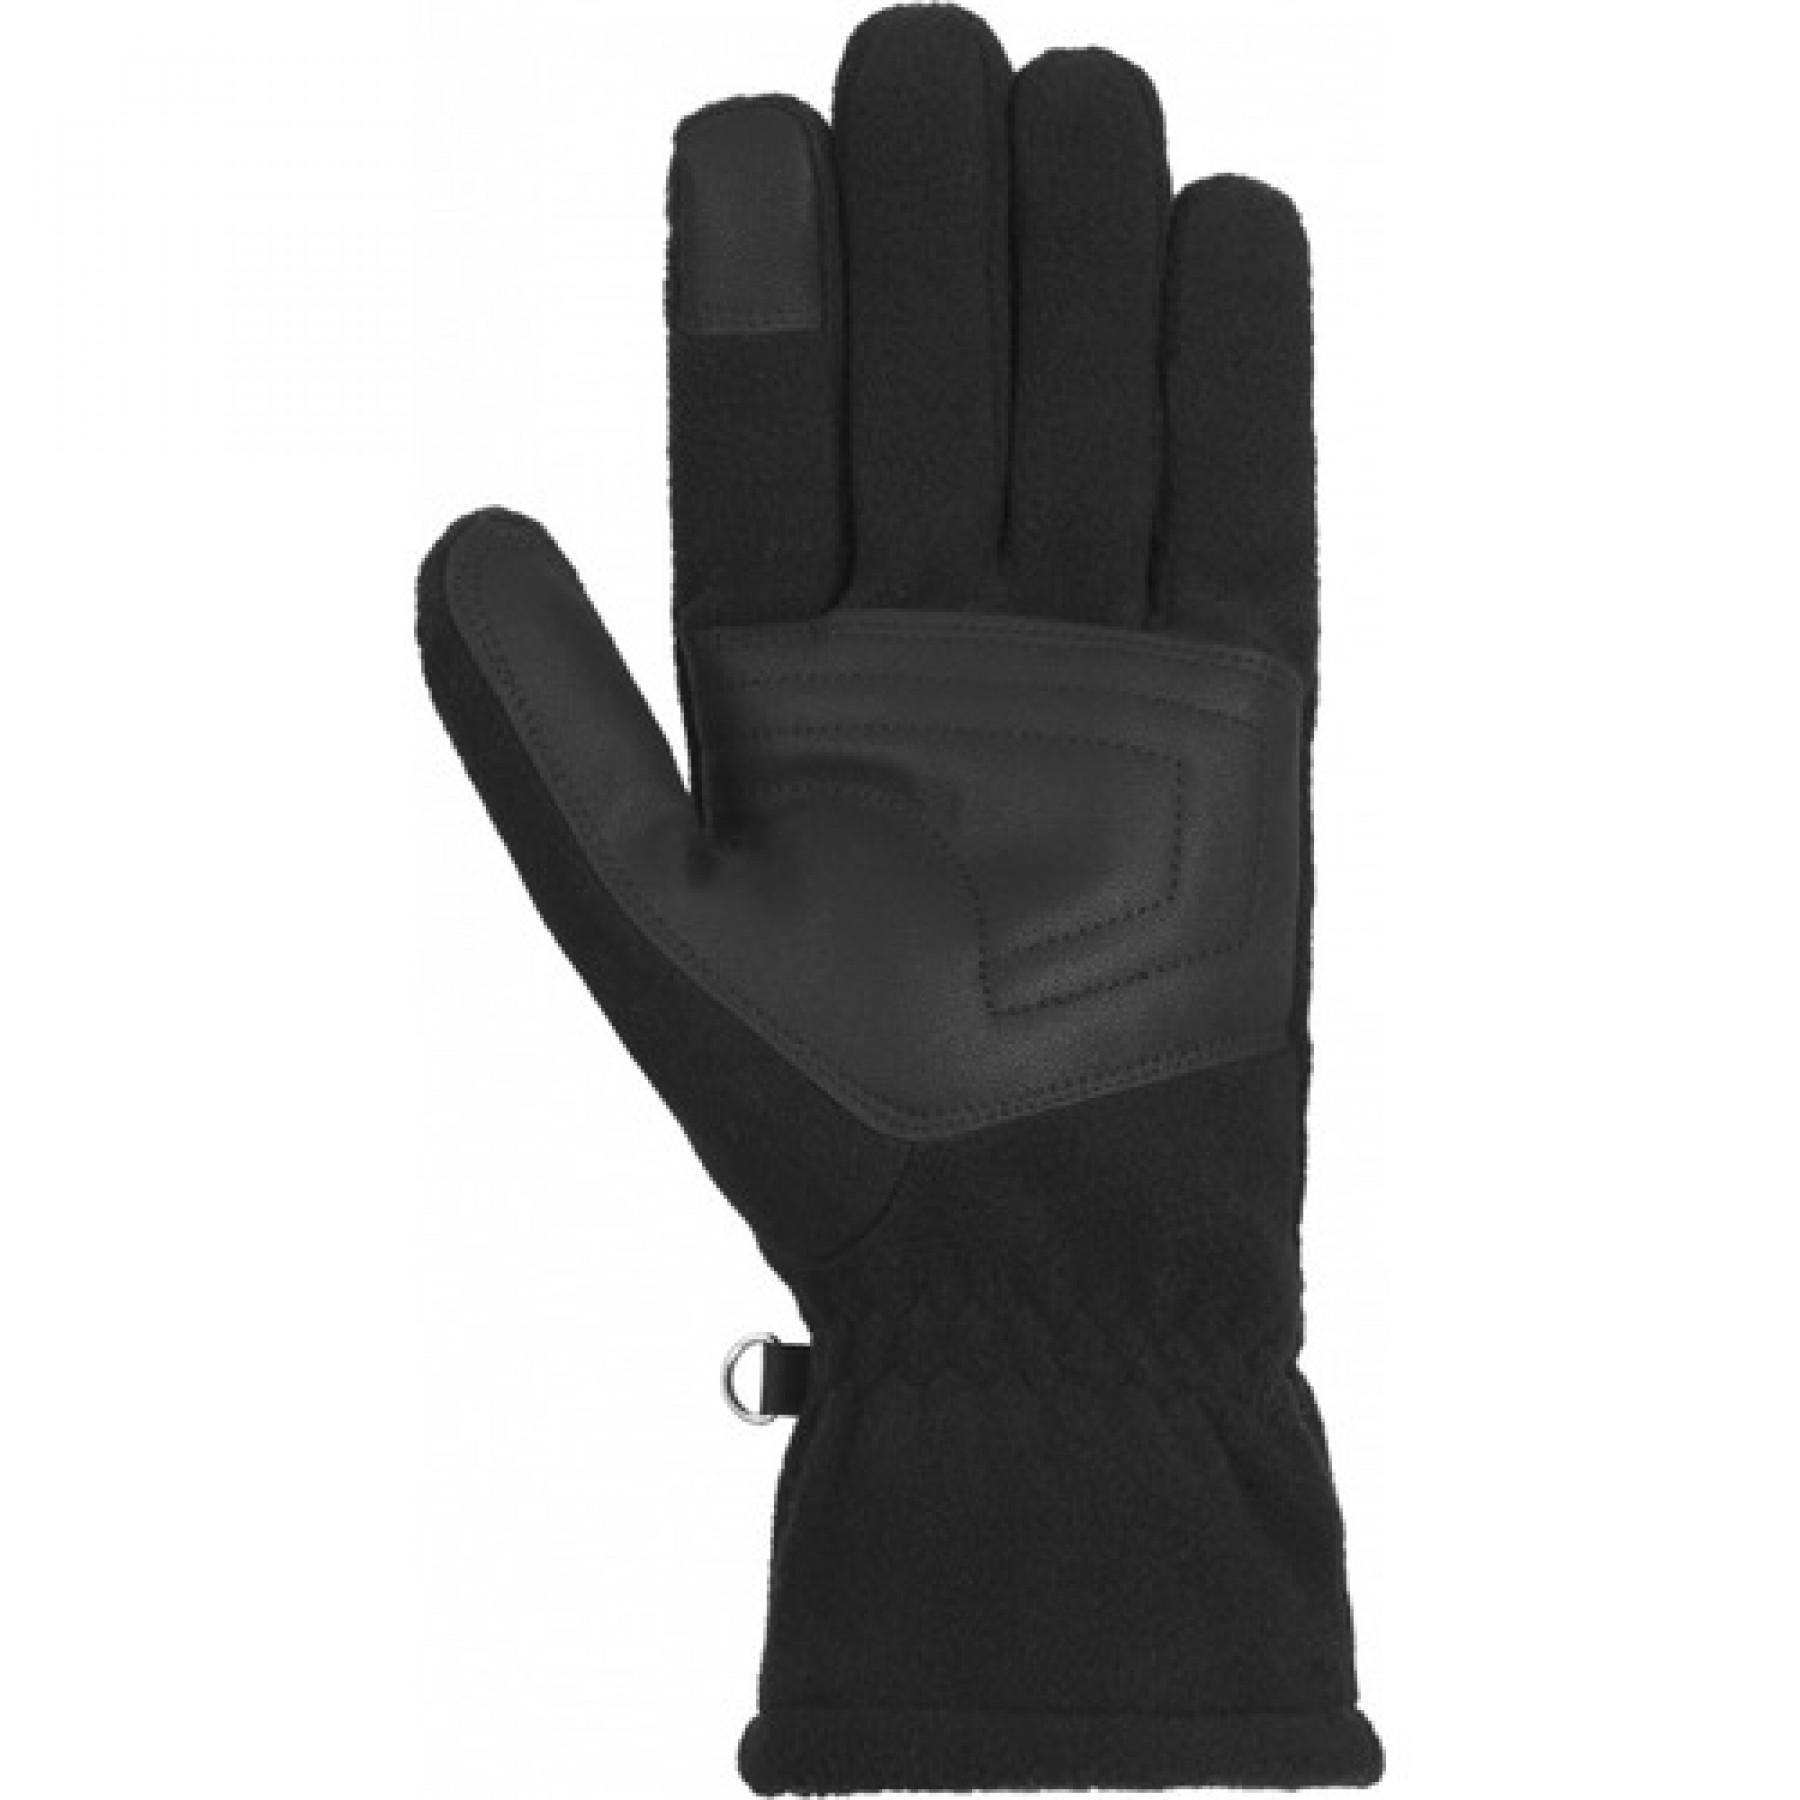 Handschuhe Reusch Basic Touch-tec